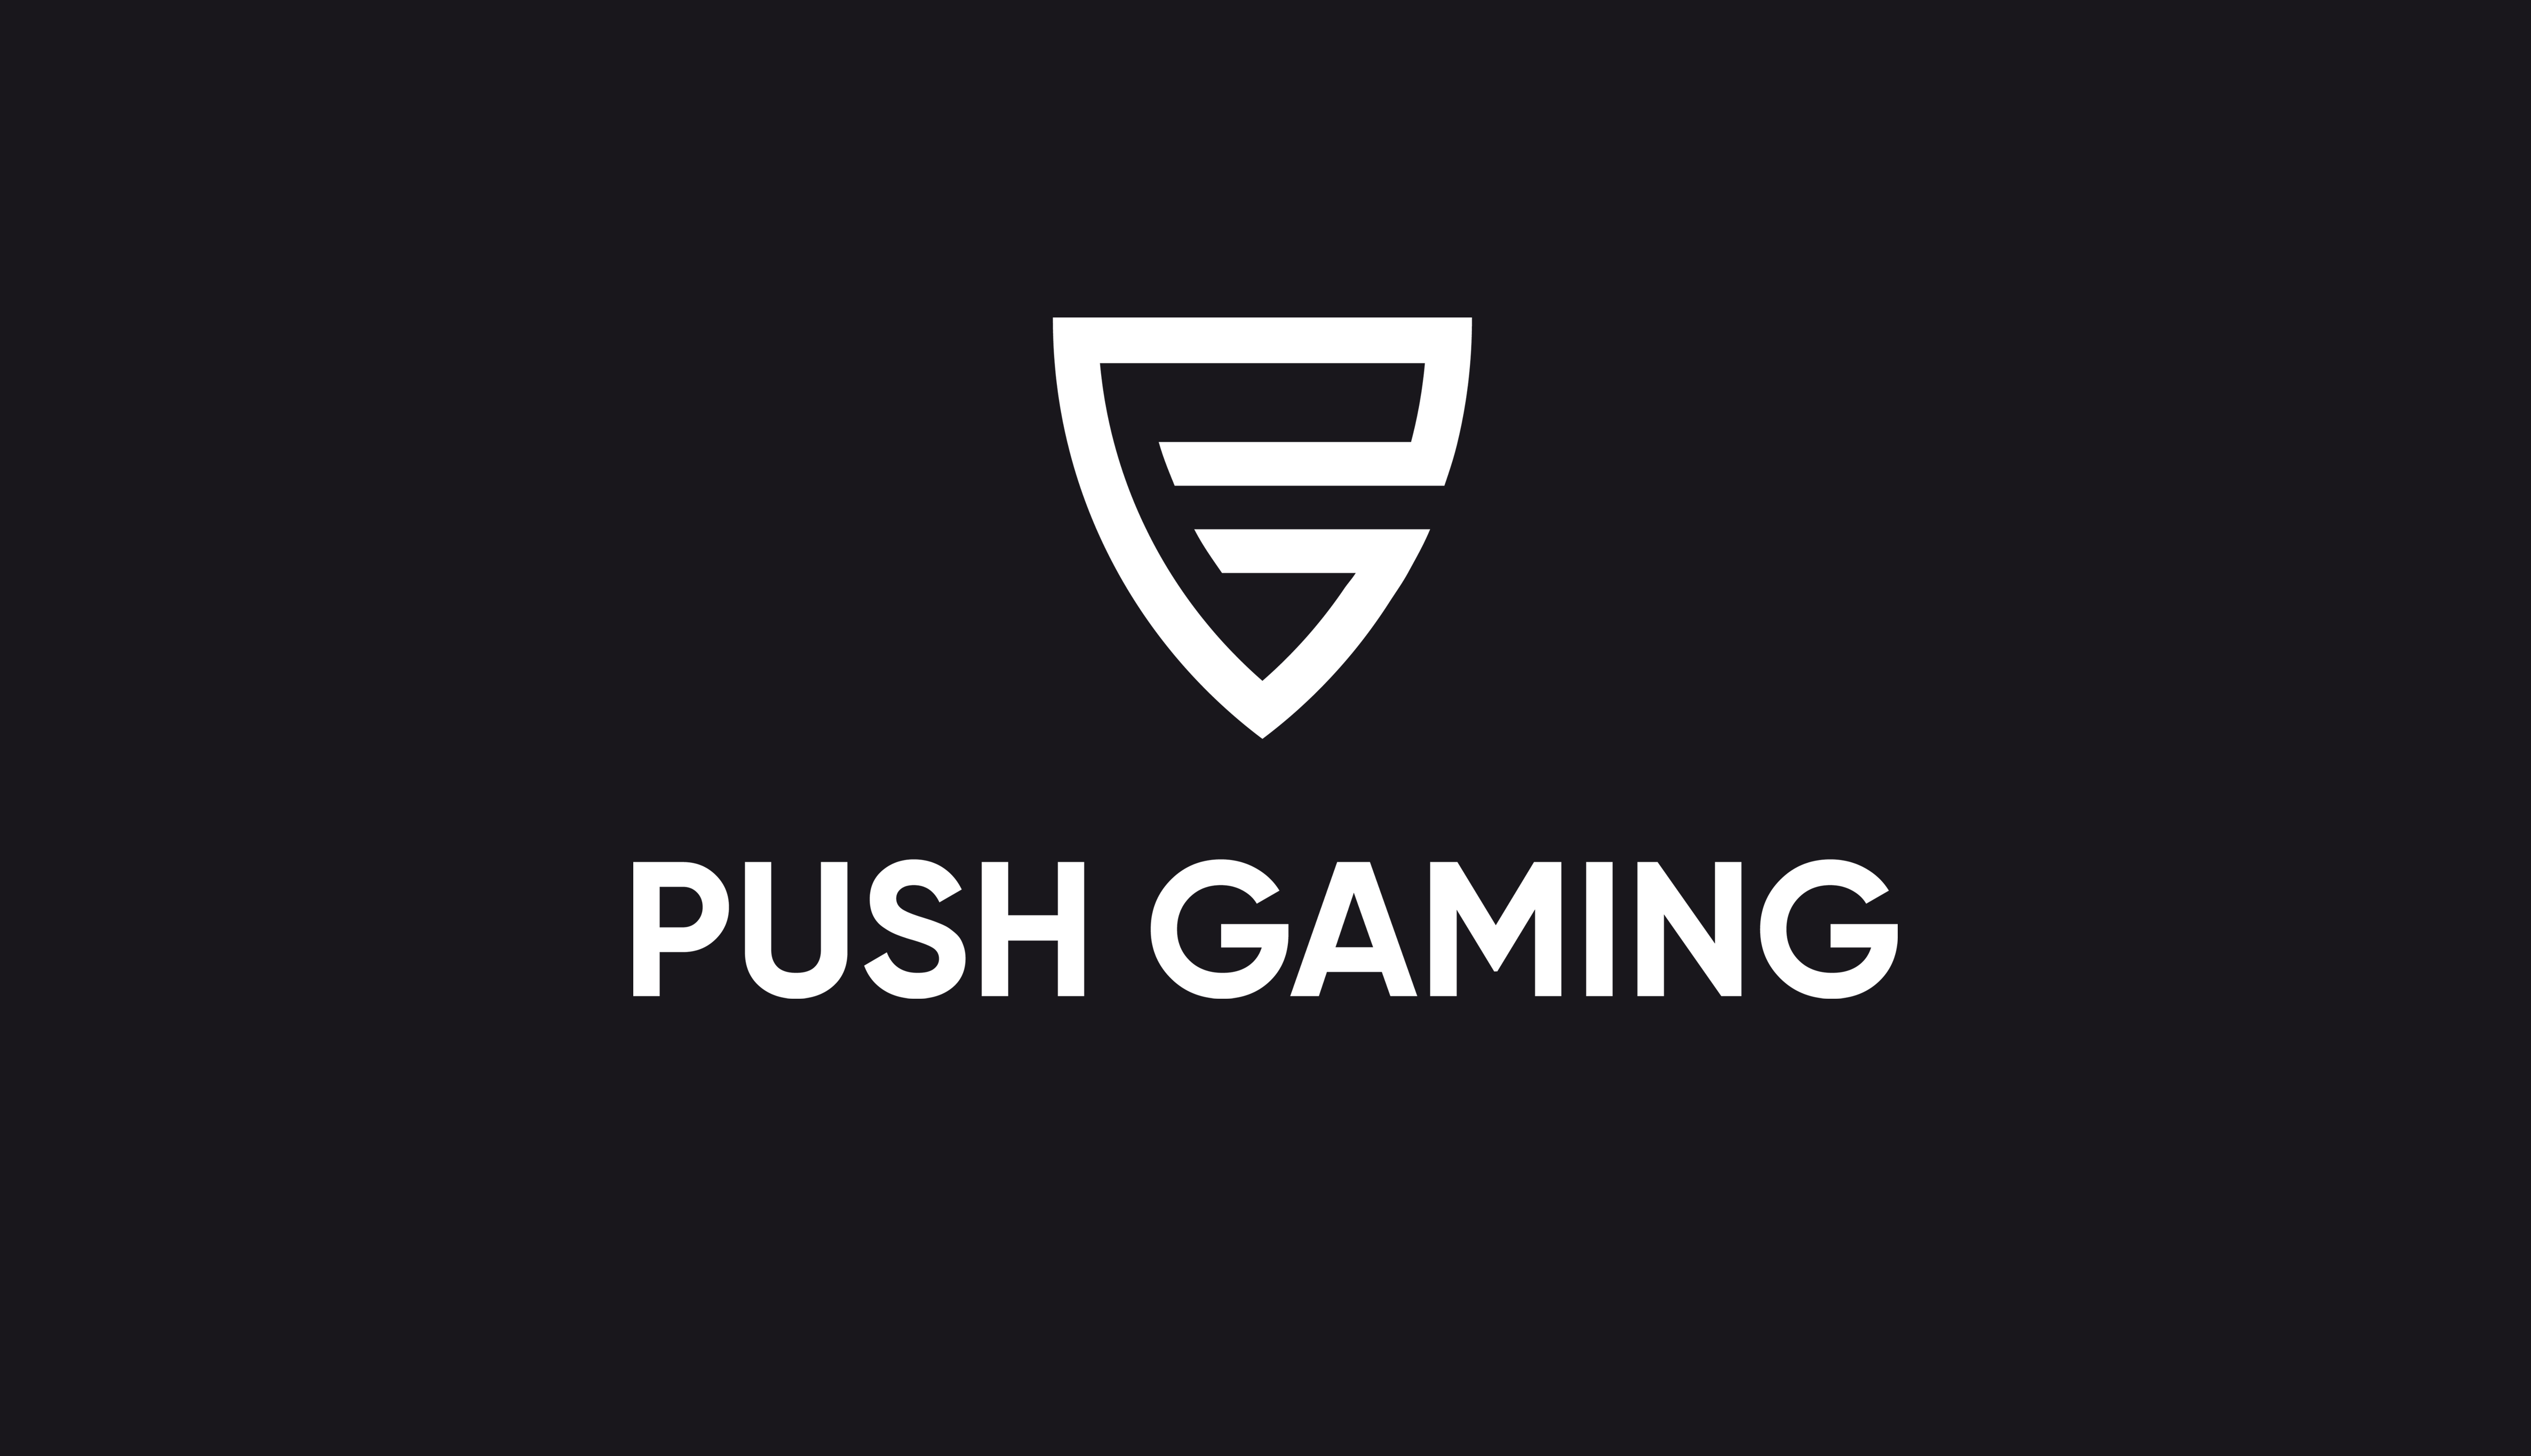 Push Gaming - logo